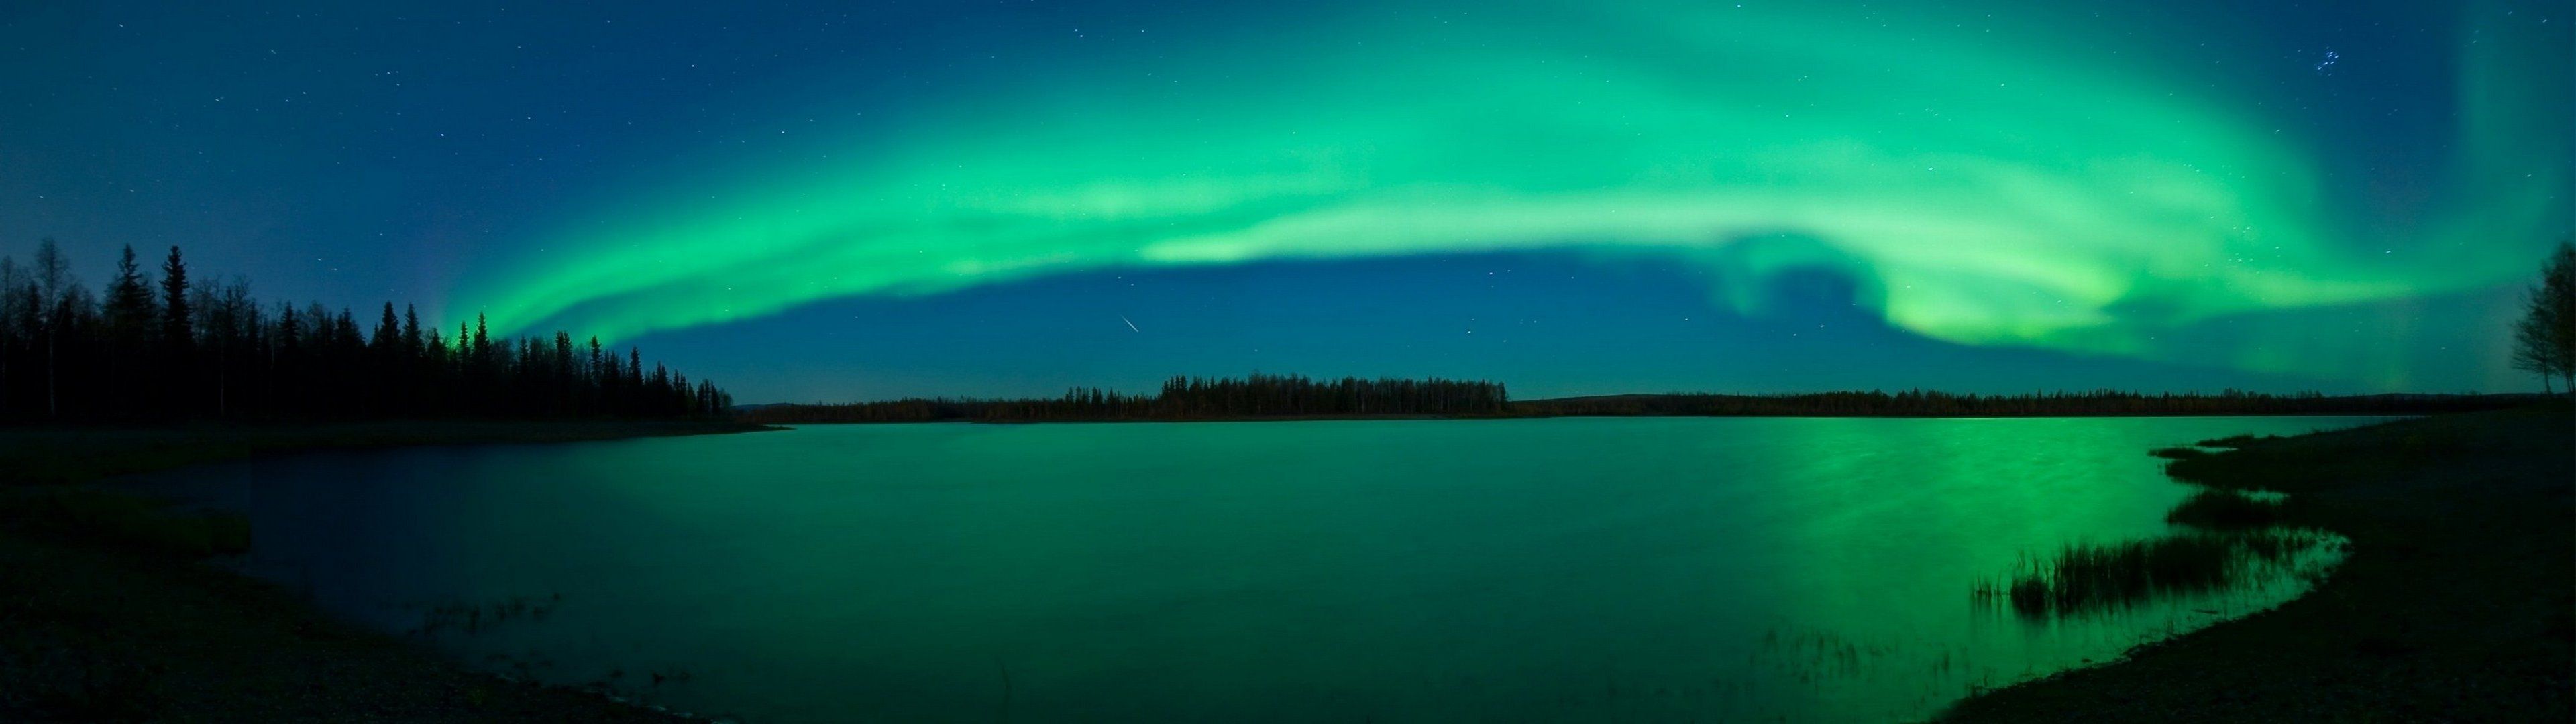 Aurora borealis lakes wallpaper | 3840x1080 | 260380 | WallpaperUP